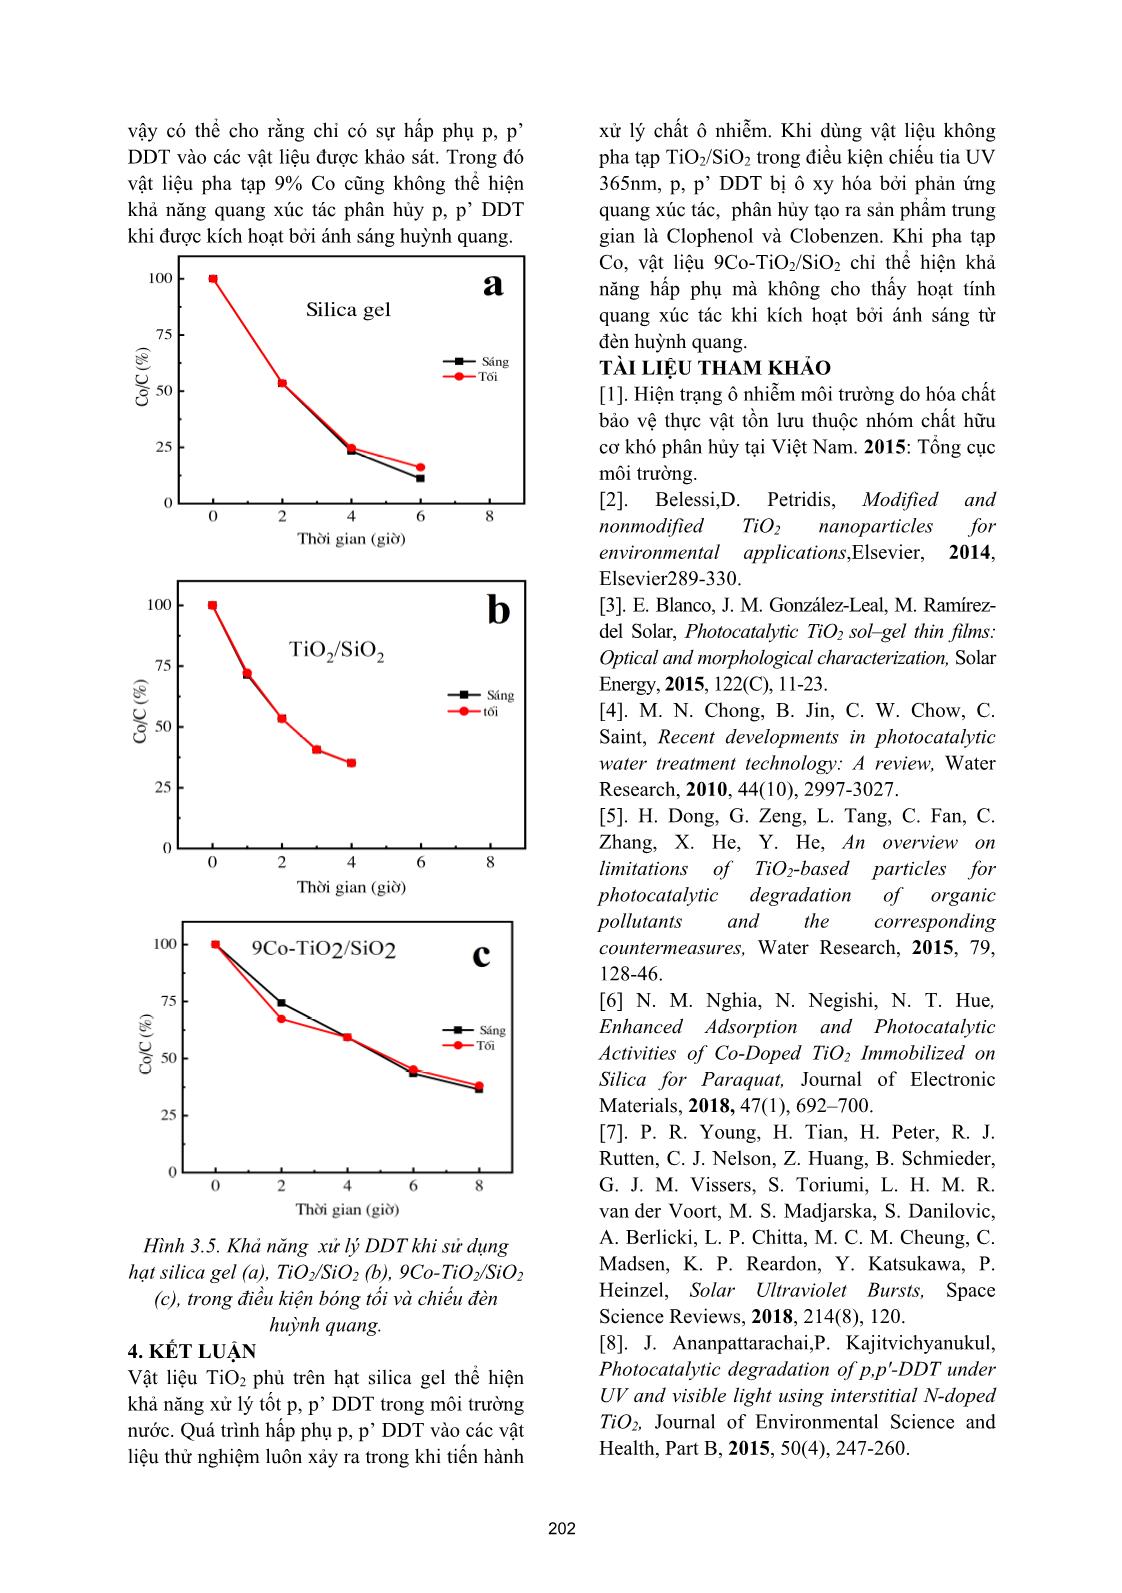 Đánh giá khả năng quang xúc tác phân hủy p, p’ DDT sử dụng TiO₂ phủ trên hạt silica gel trang 5